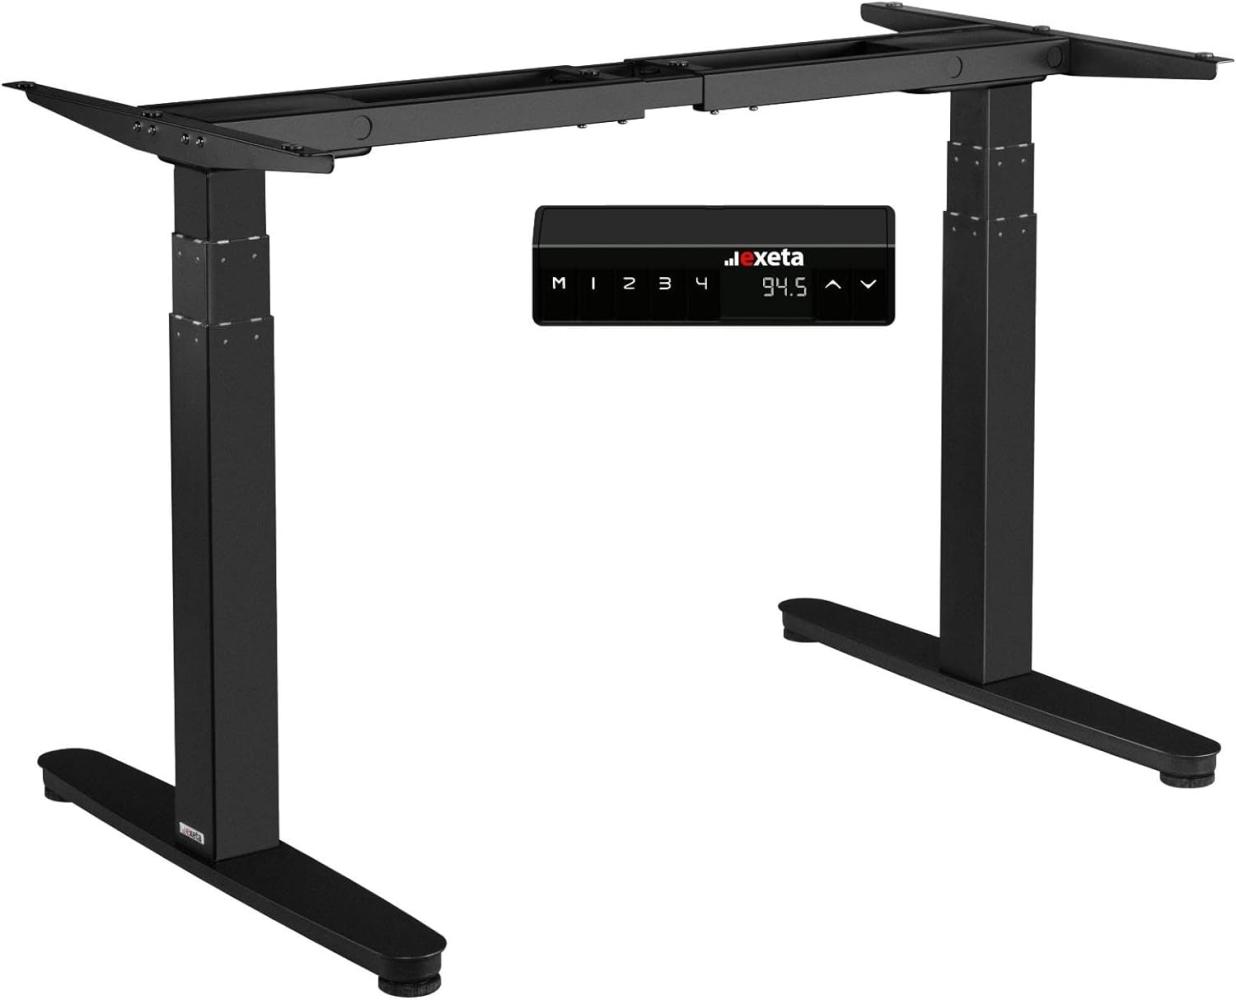 Exeta ergoSMART Elektrisch höhenverstellbarer Schreibtisch mit 2 Motoren, 3-Fach-Teleskop, Memory-Funkt. und Softstart/-stopp, höhenverstellbares Tischgestell (Black) Bild 1